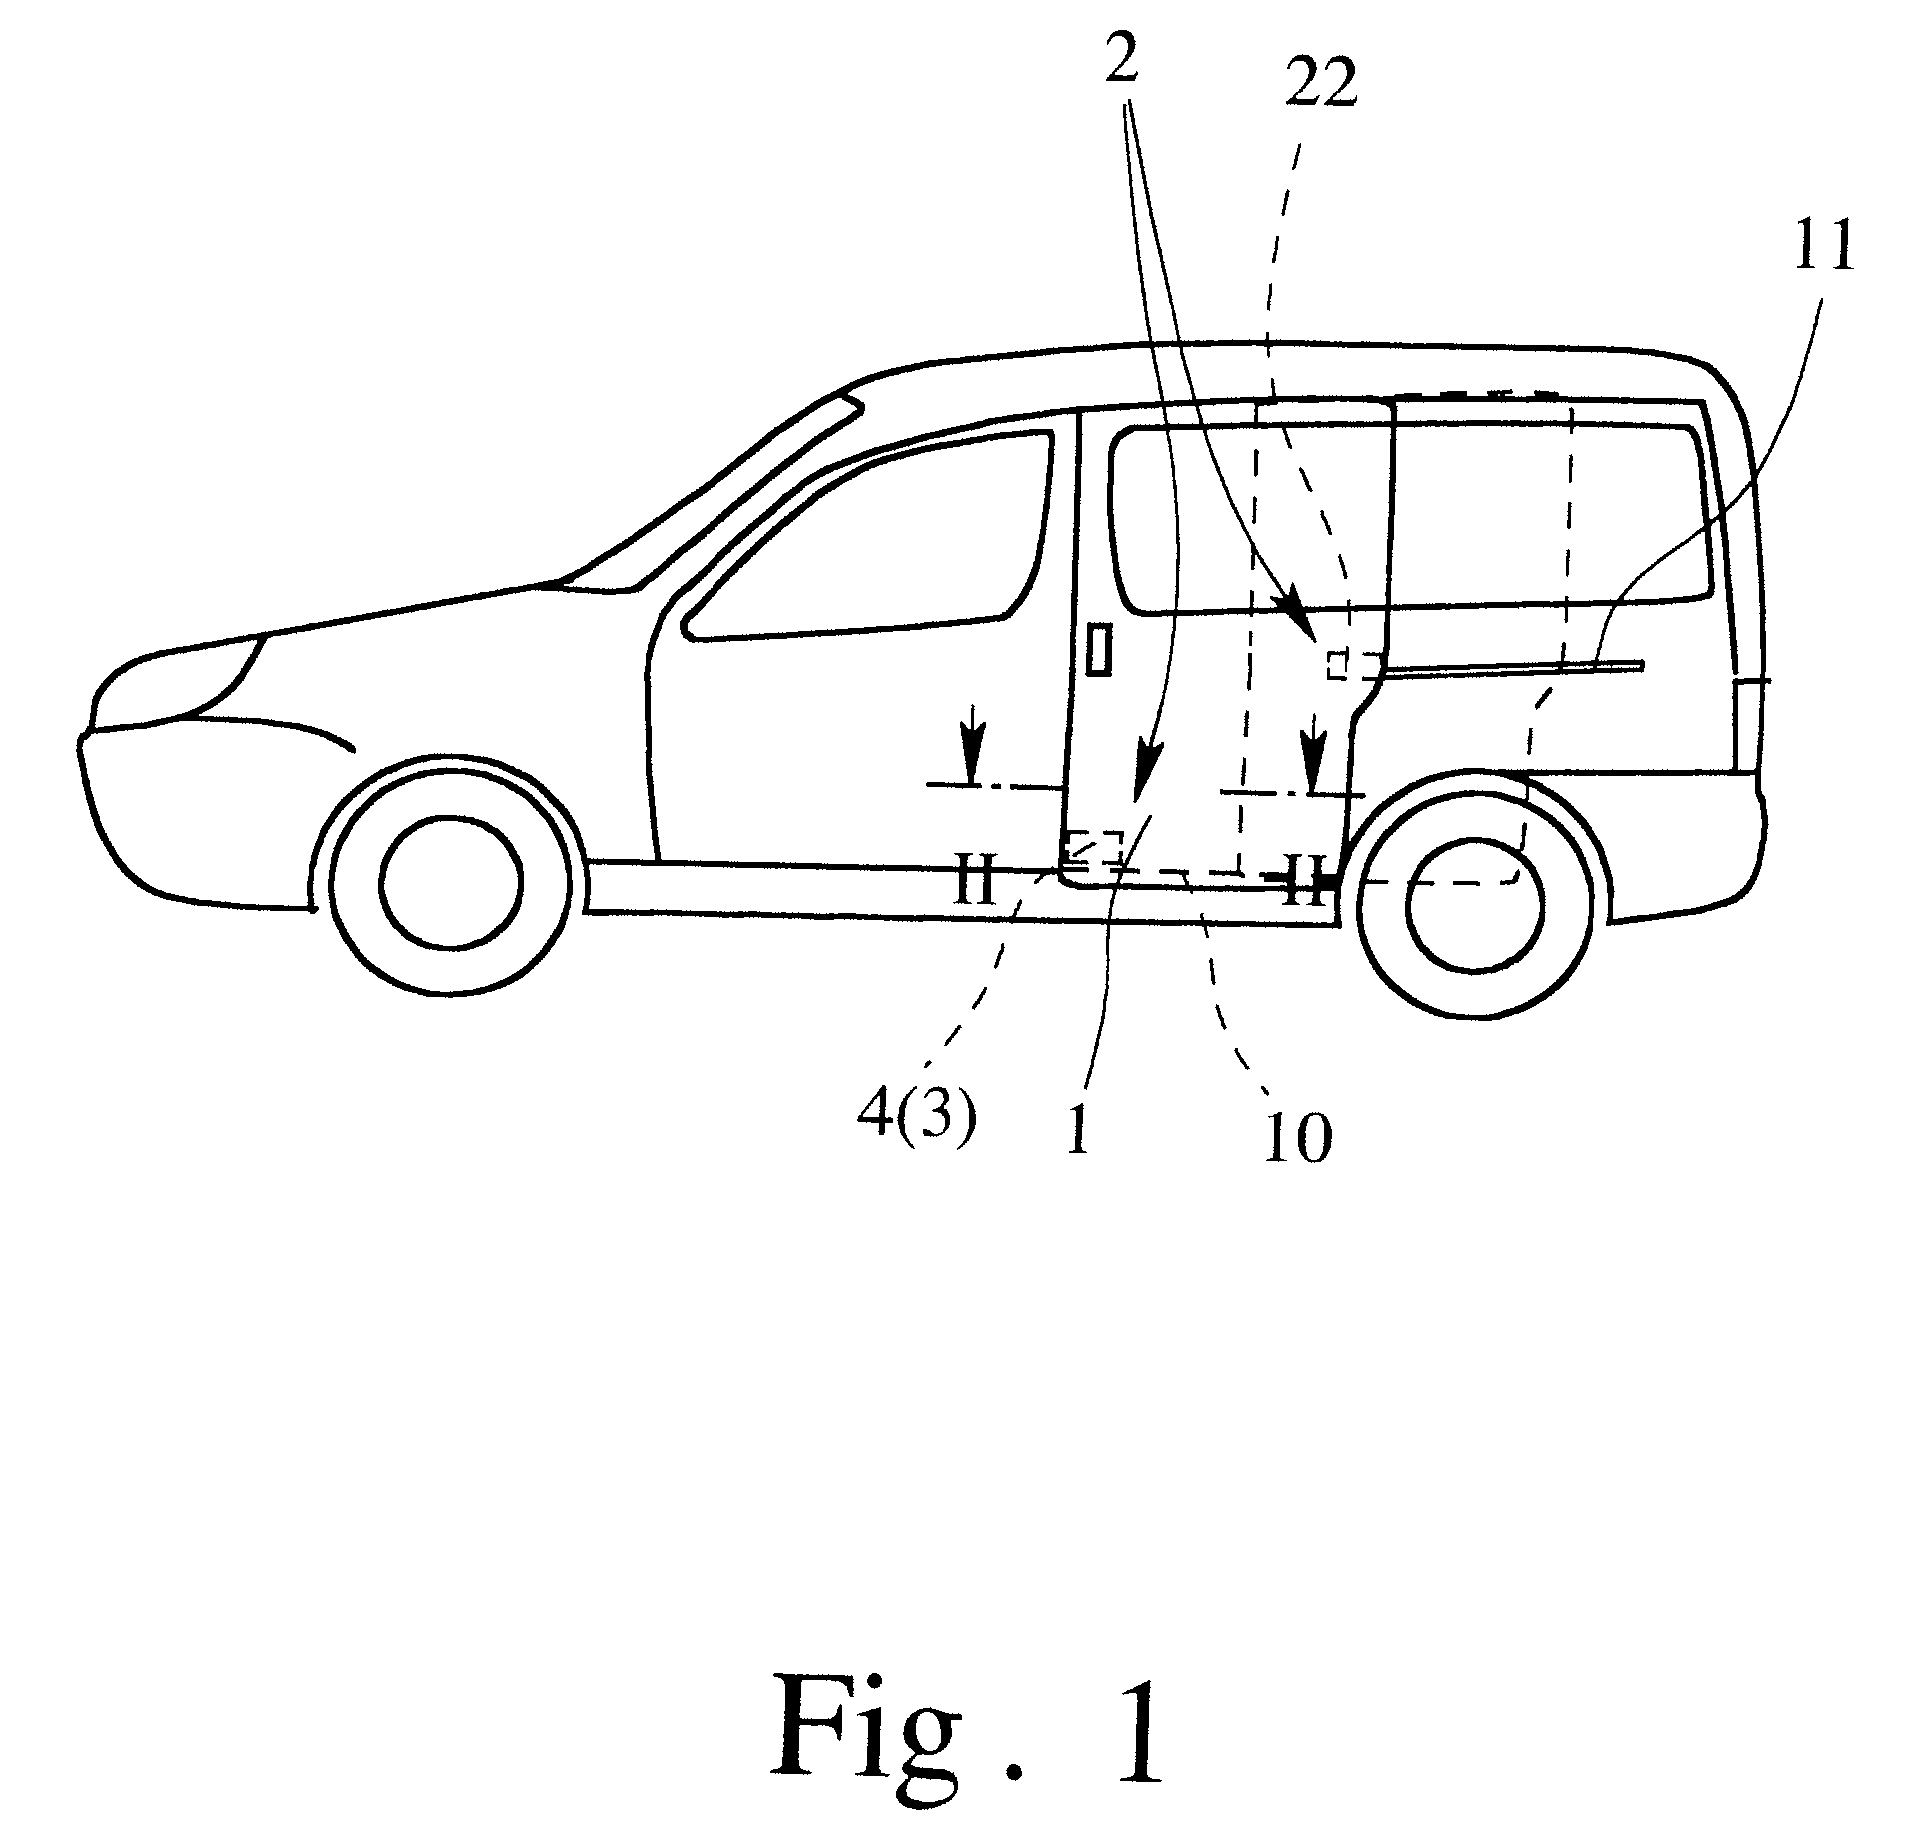 Sliding door arrangement for a motor vehicle